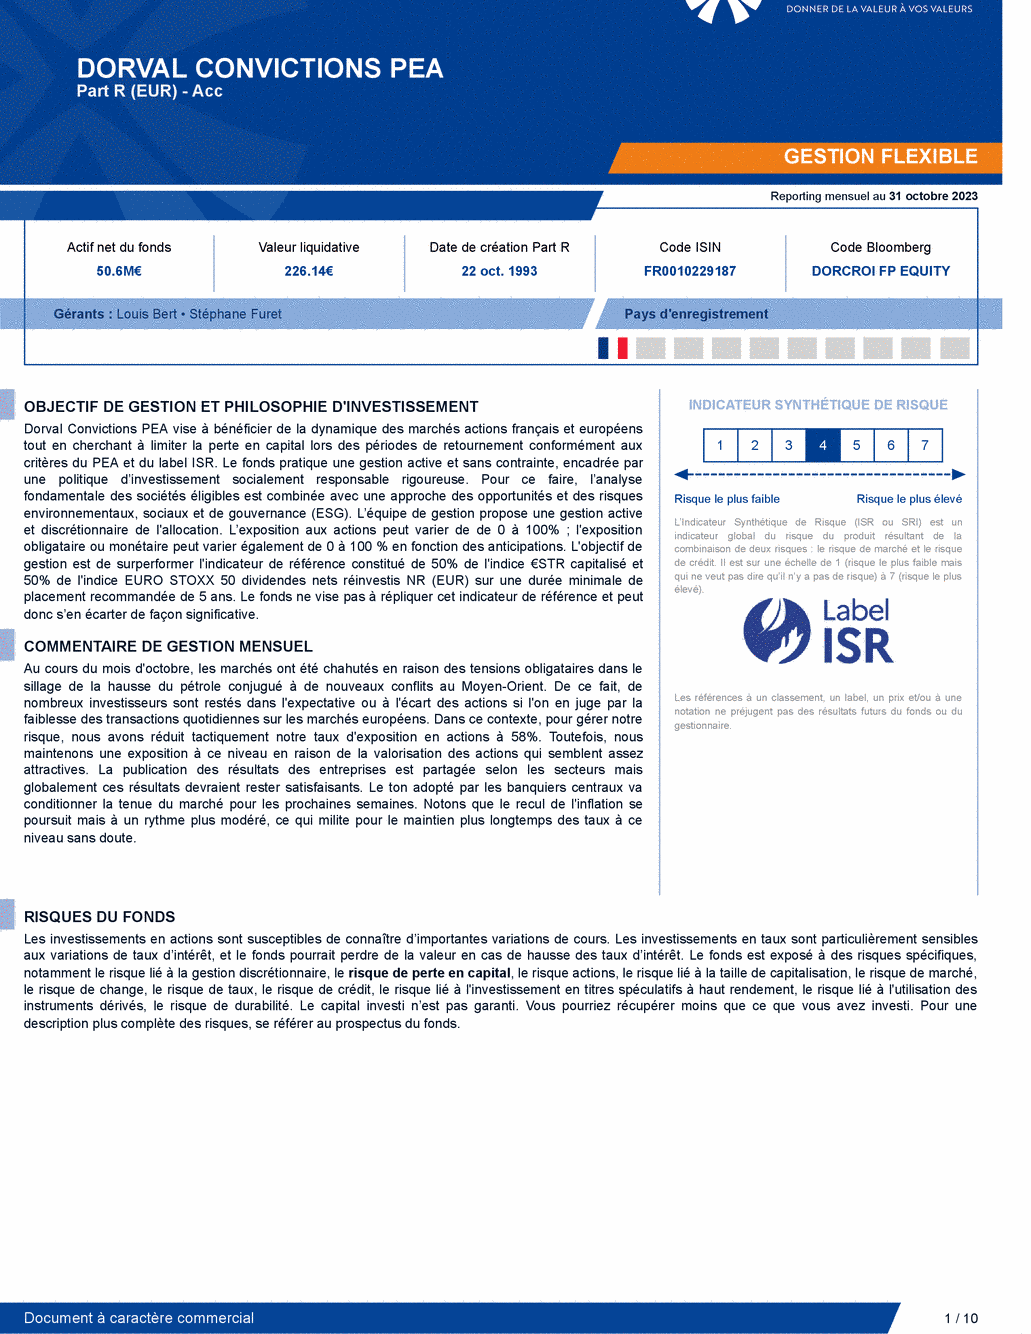 Reporting DORVAL CONVICTIONS PEA - 31/10/2023 - Français